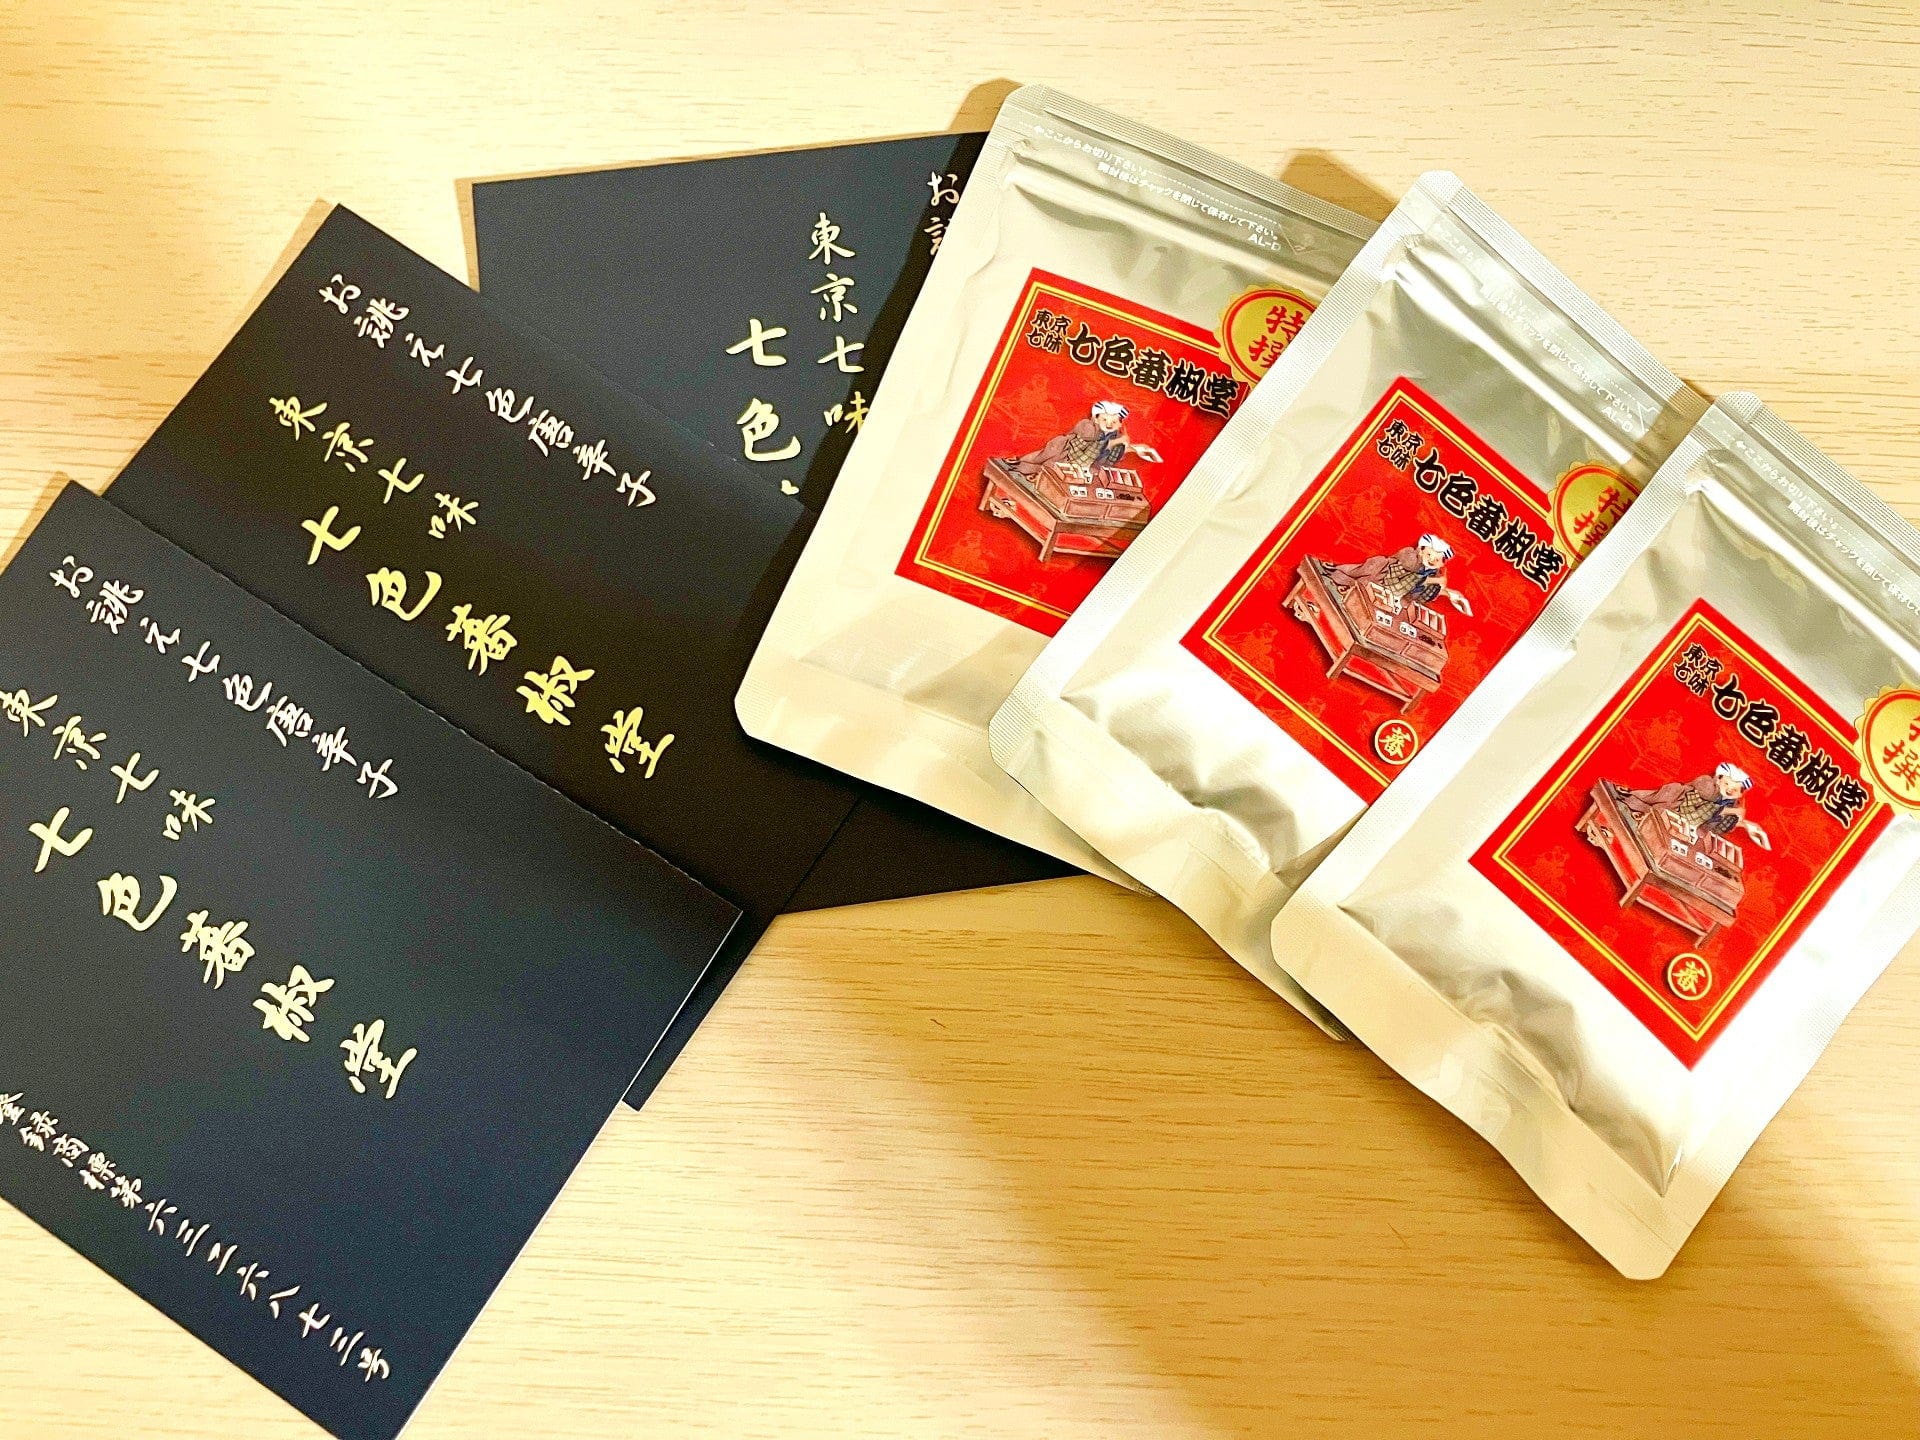 SPICY BOX: Japanese Spice Mix 'Shichimi Togarashi' Mixed Box Japanese Food Craftsman Shop